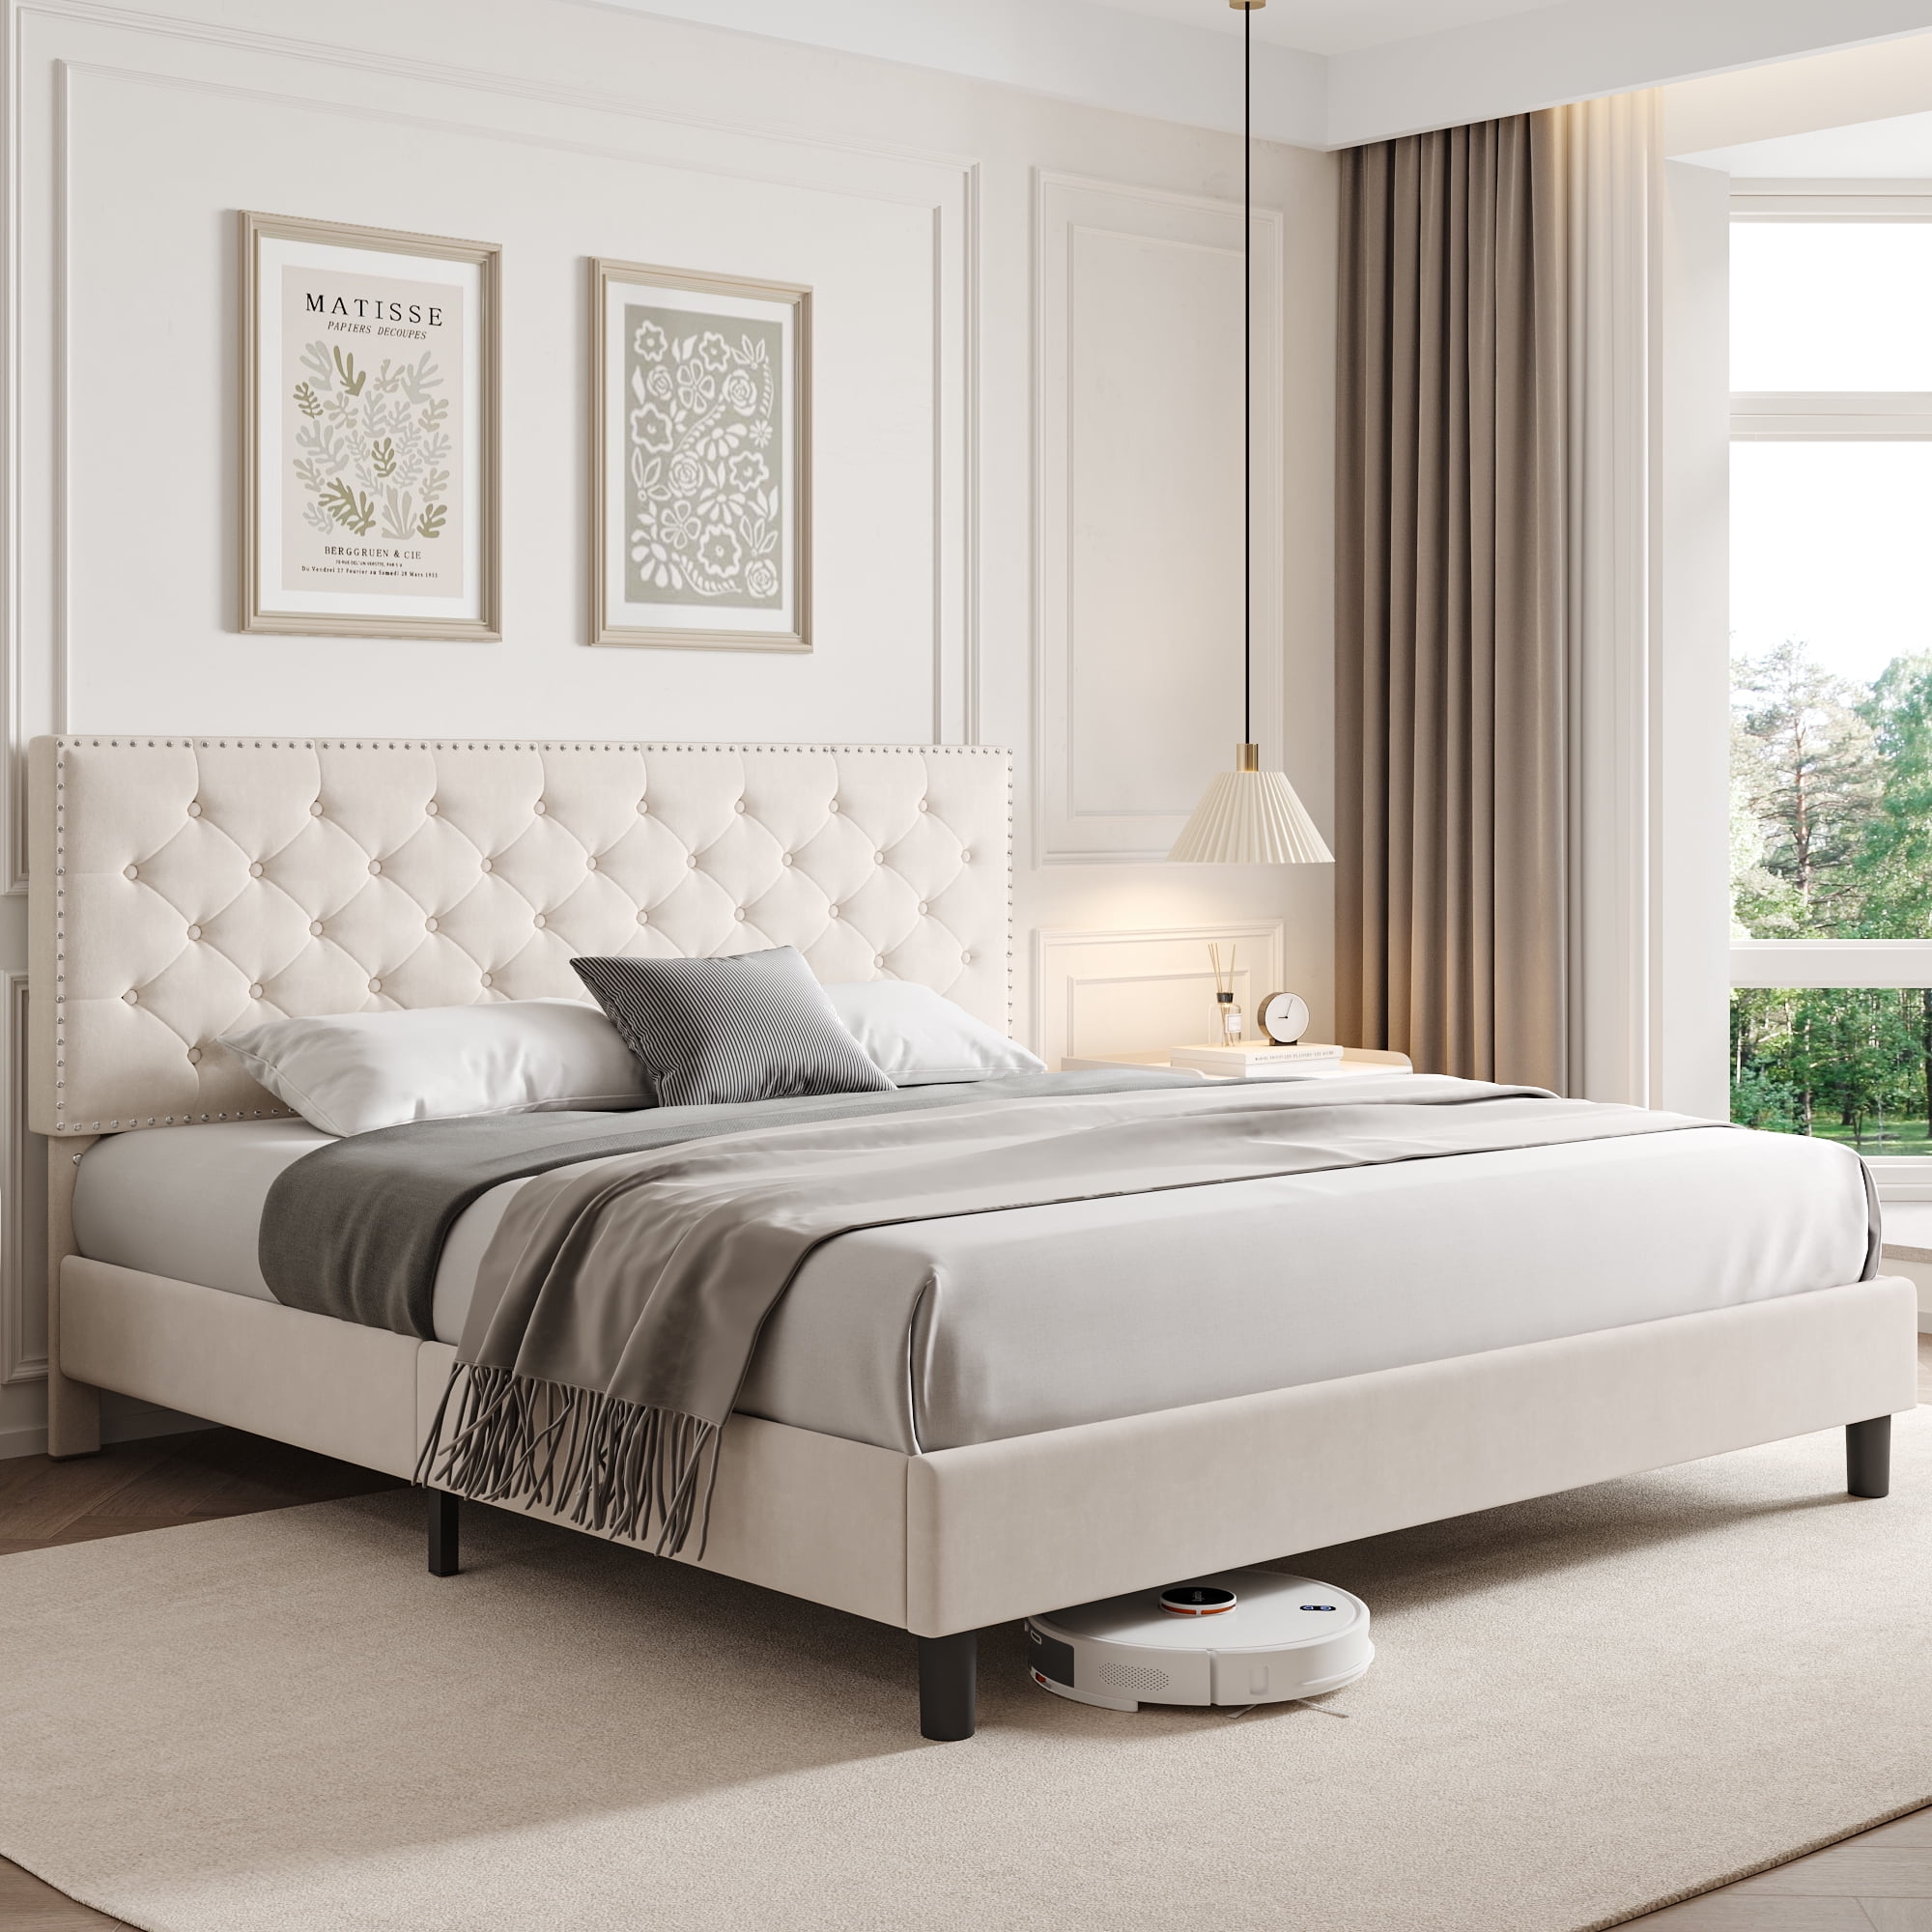 Homfa King Size Bed, Modern Upholstered Platform Bed Frame with Adjustable  Headboard for Bedroom, Beige 